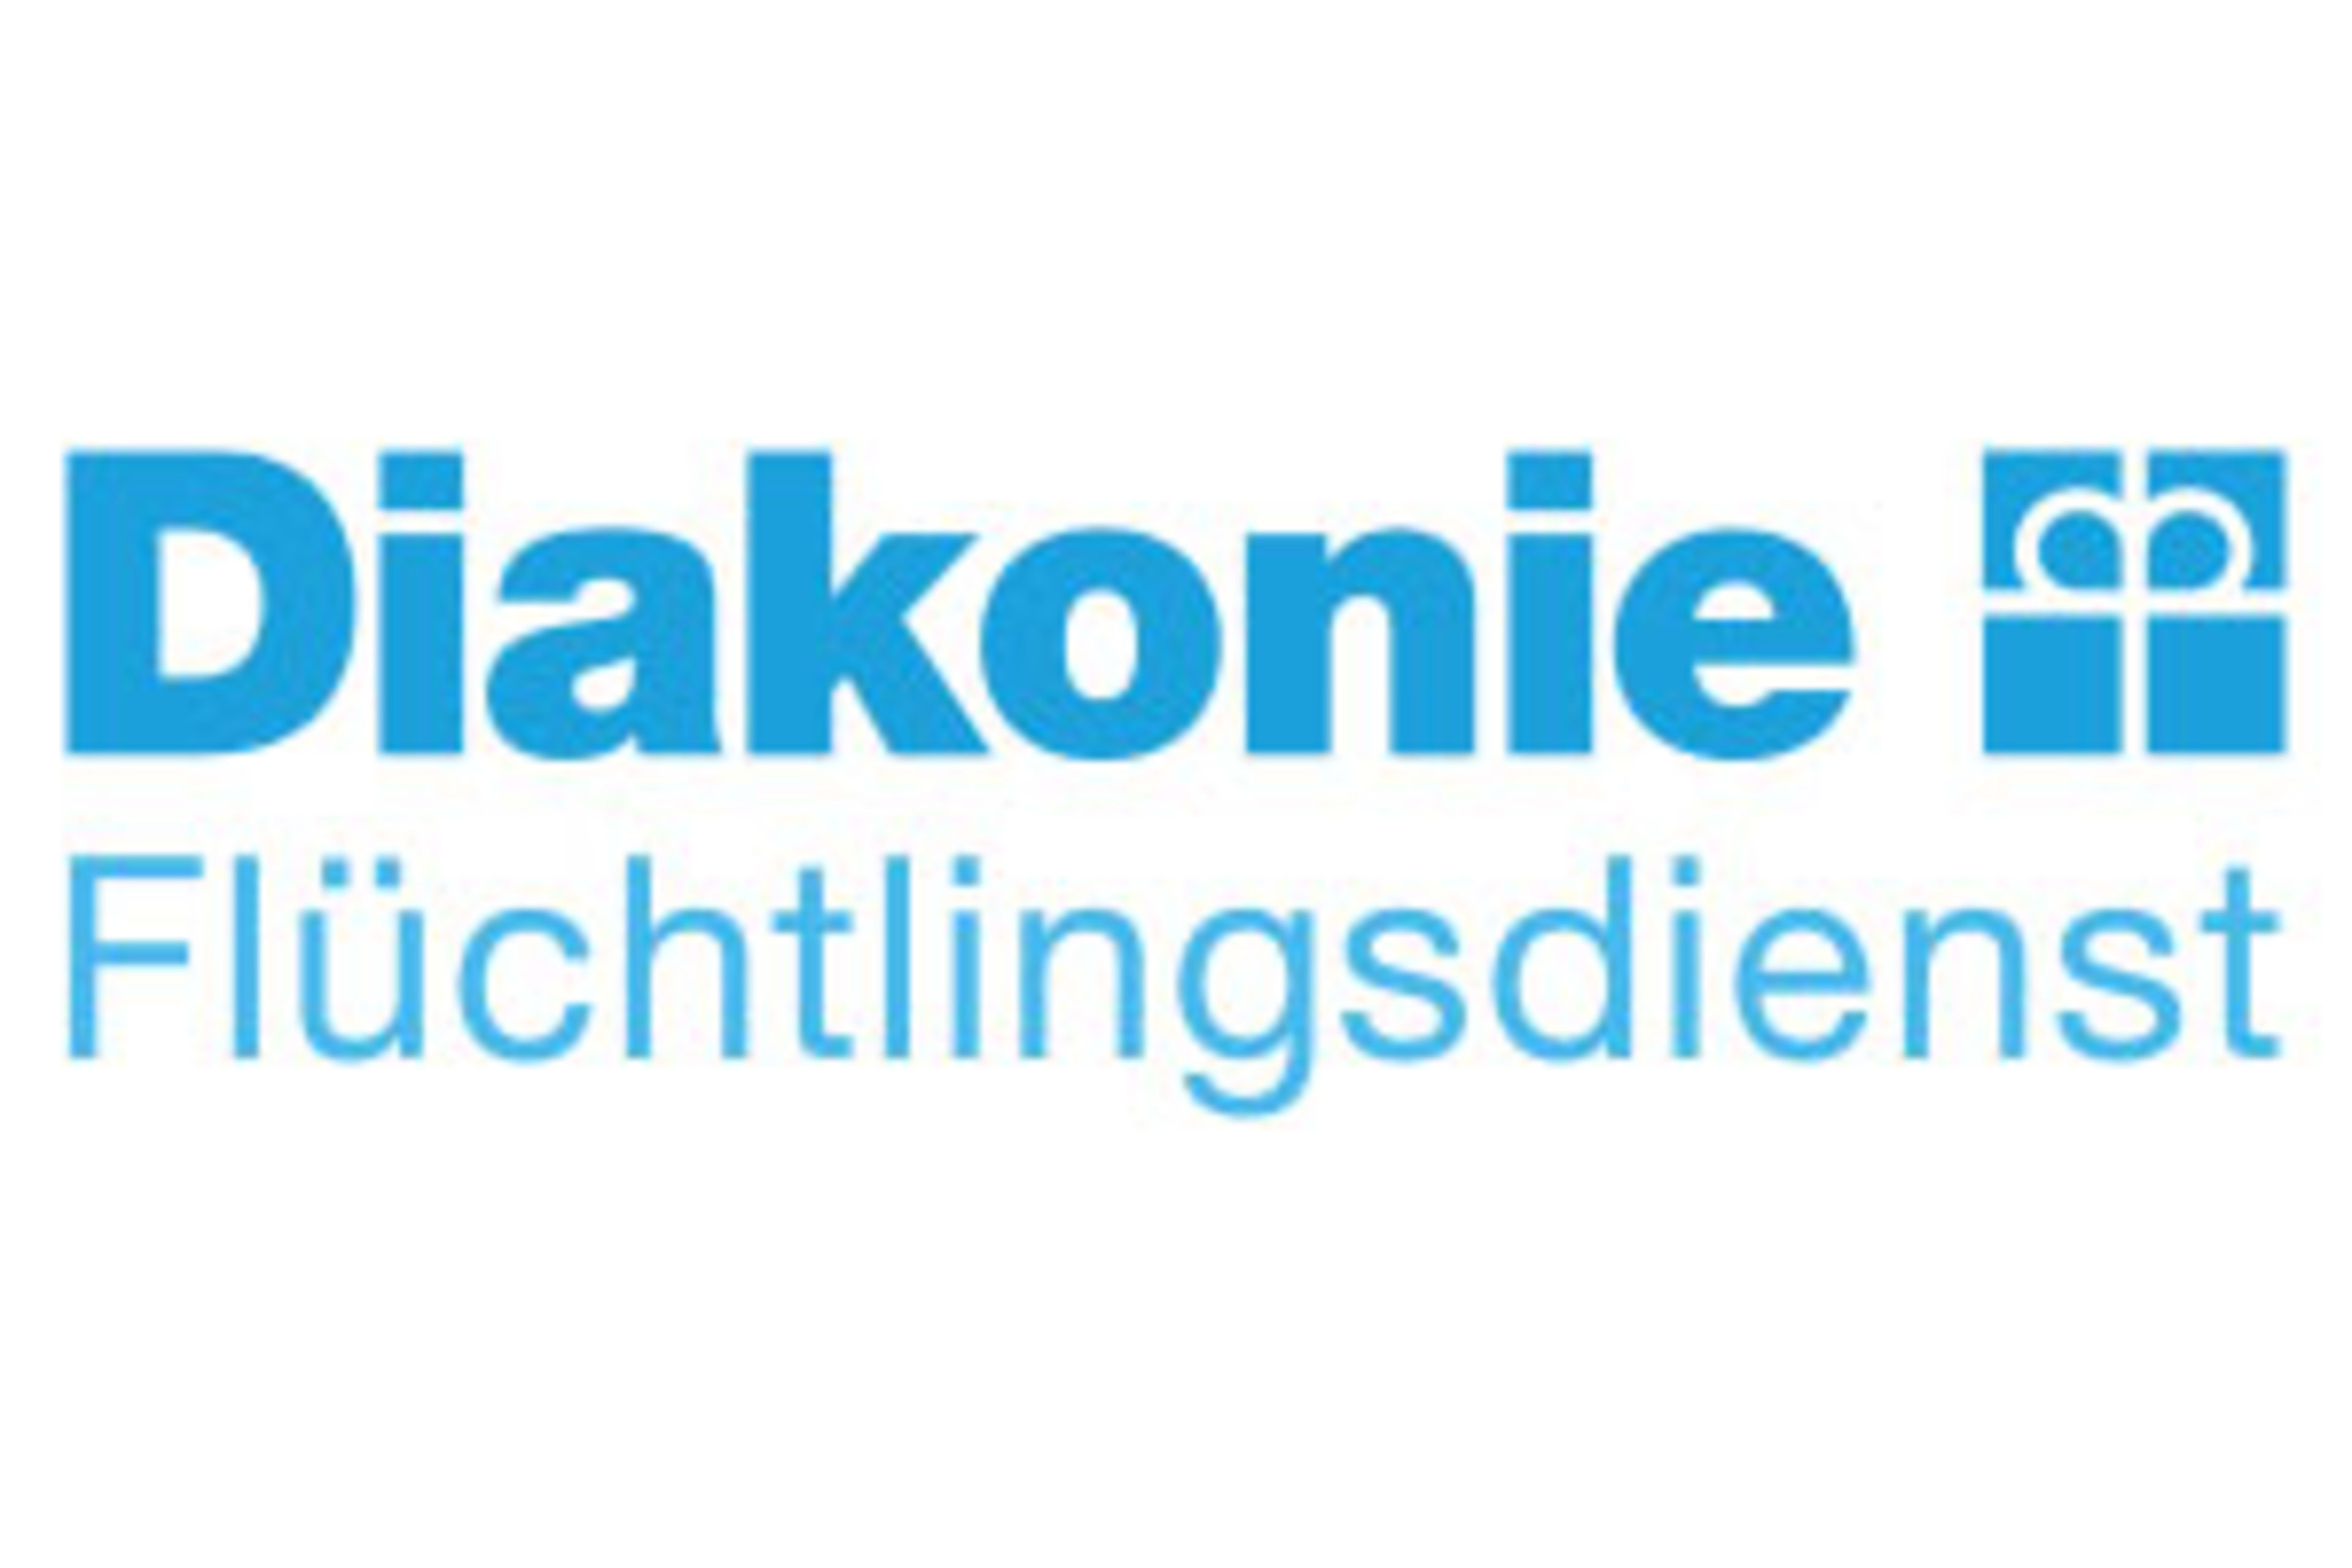 Diakonie Flüchtlingsdienst gem. GmbH